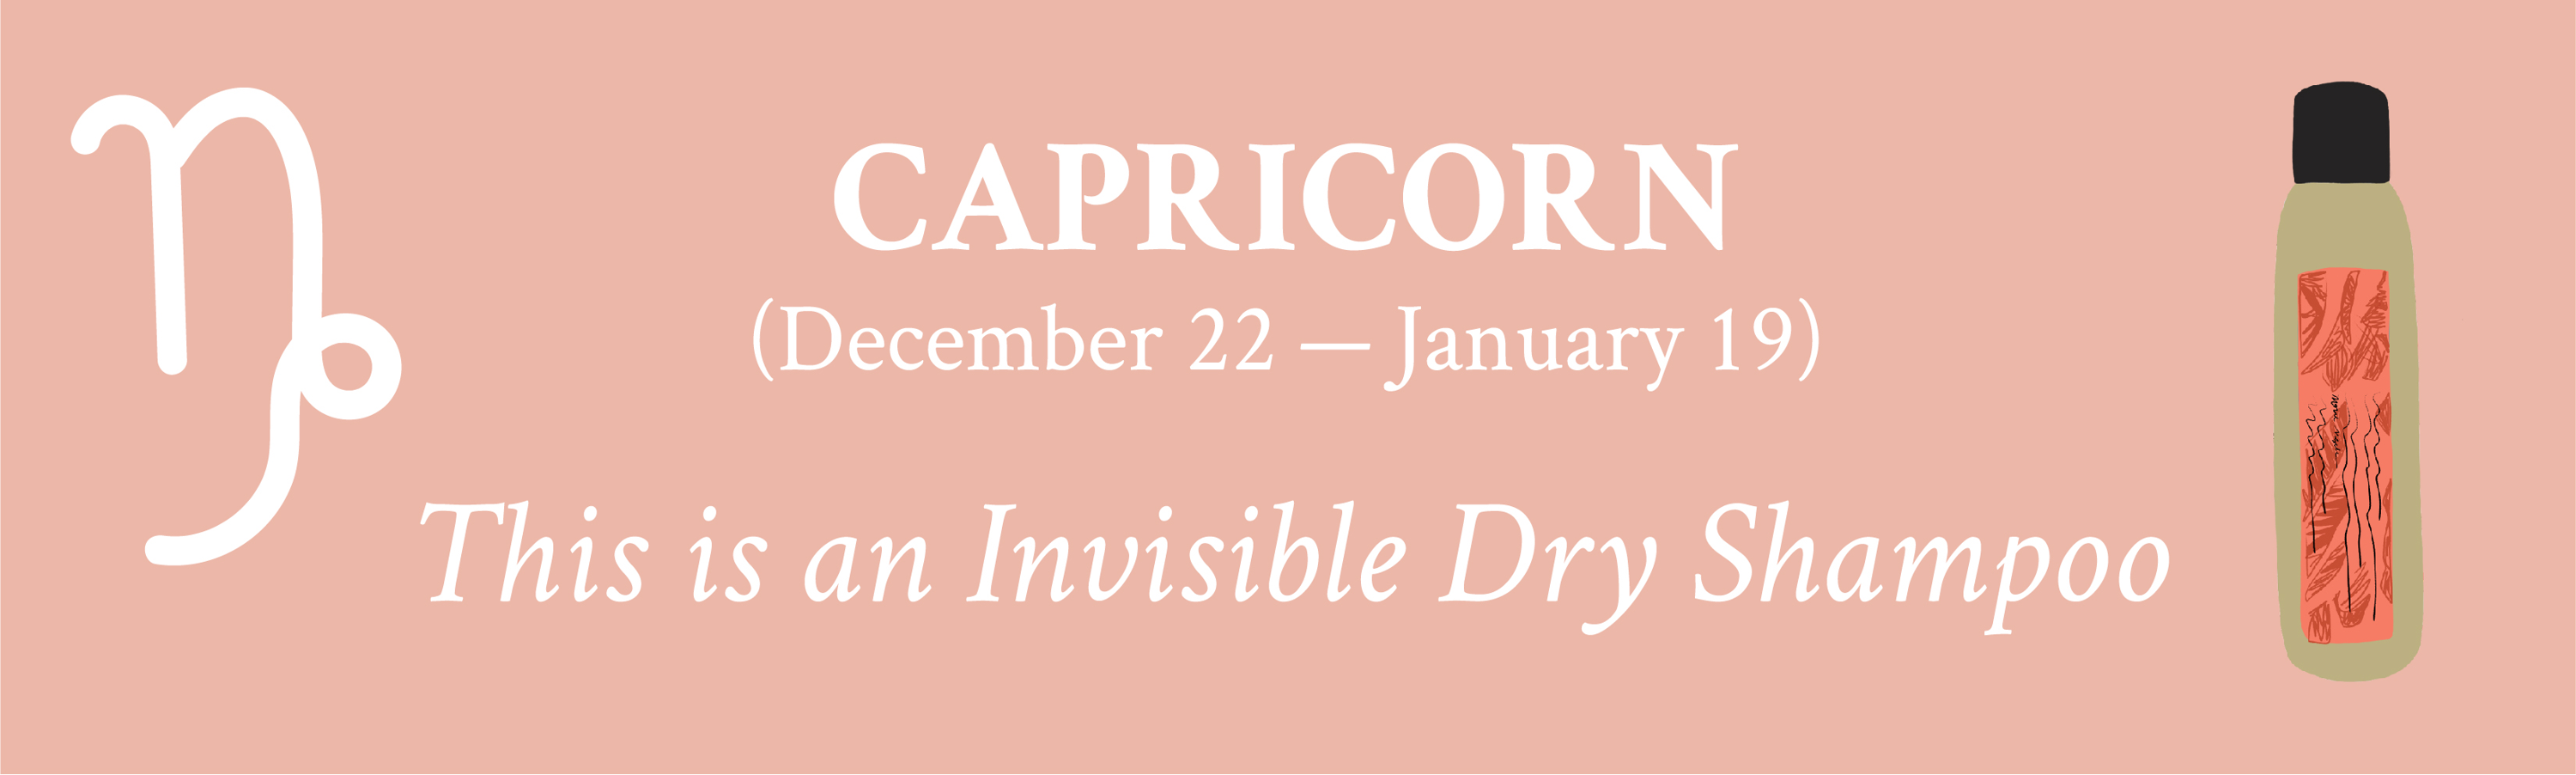 Davines for Capricorn Dry Shampoo